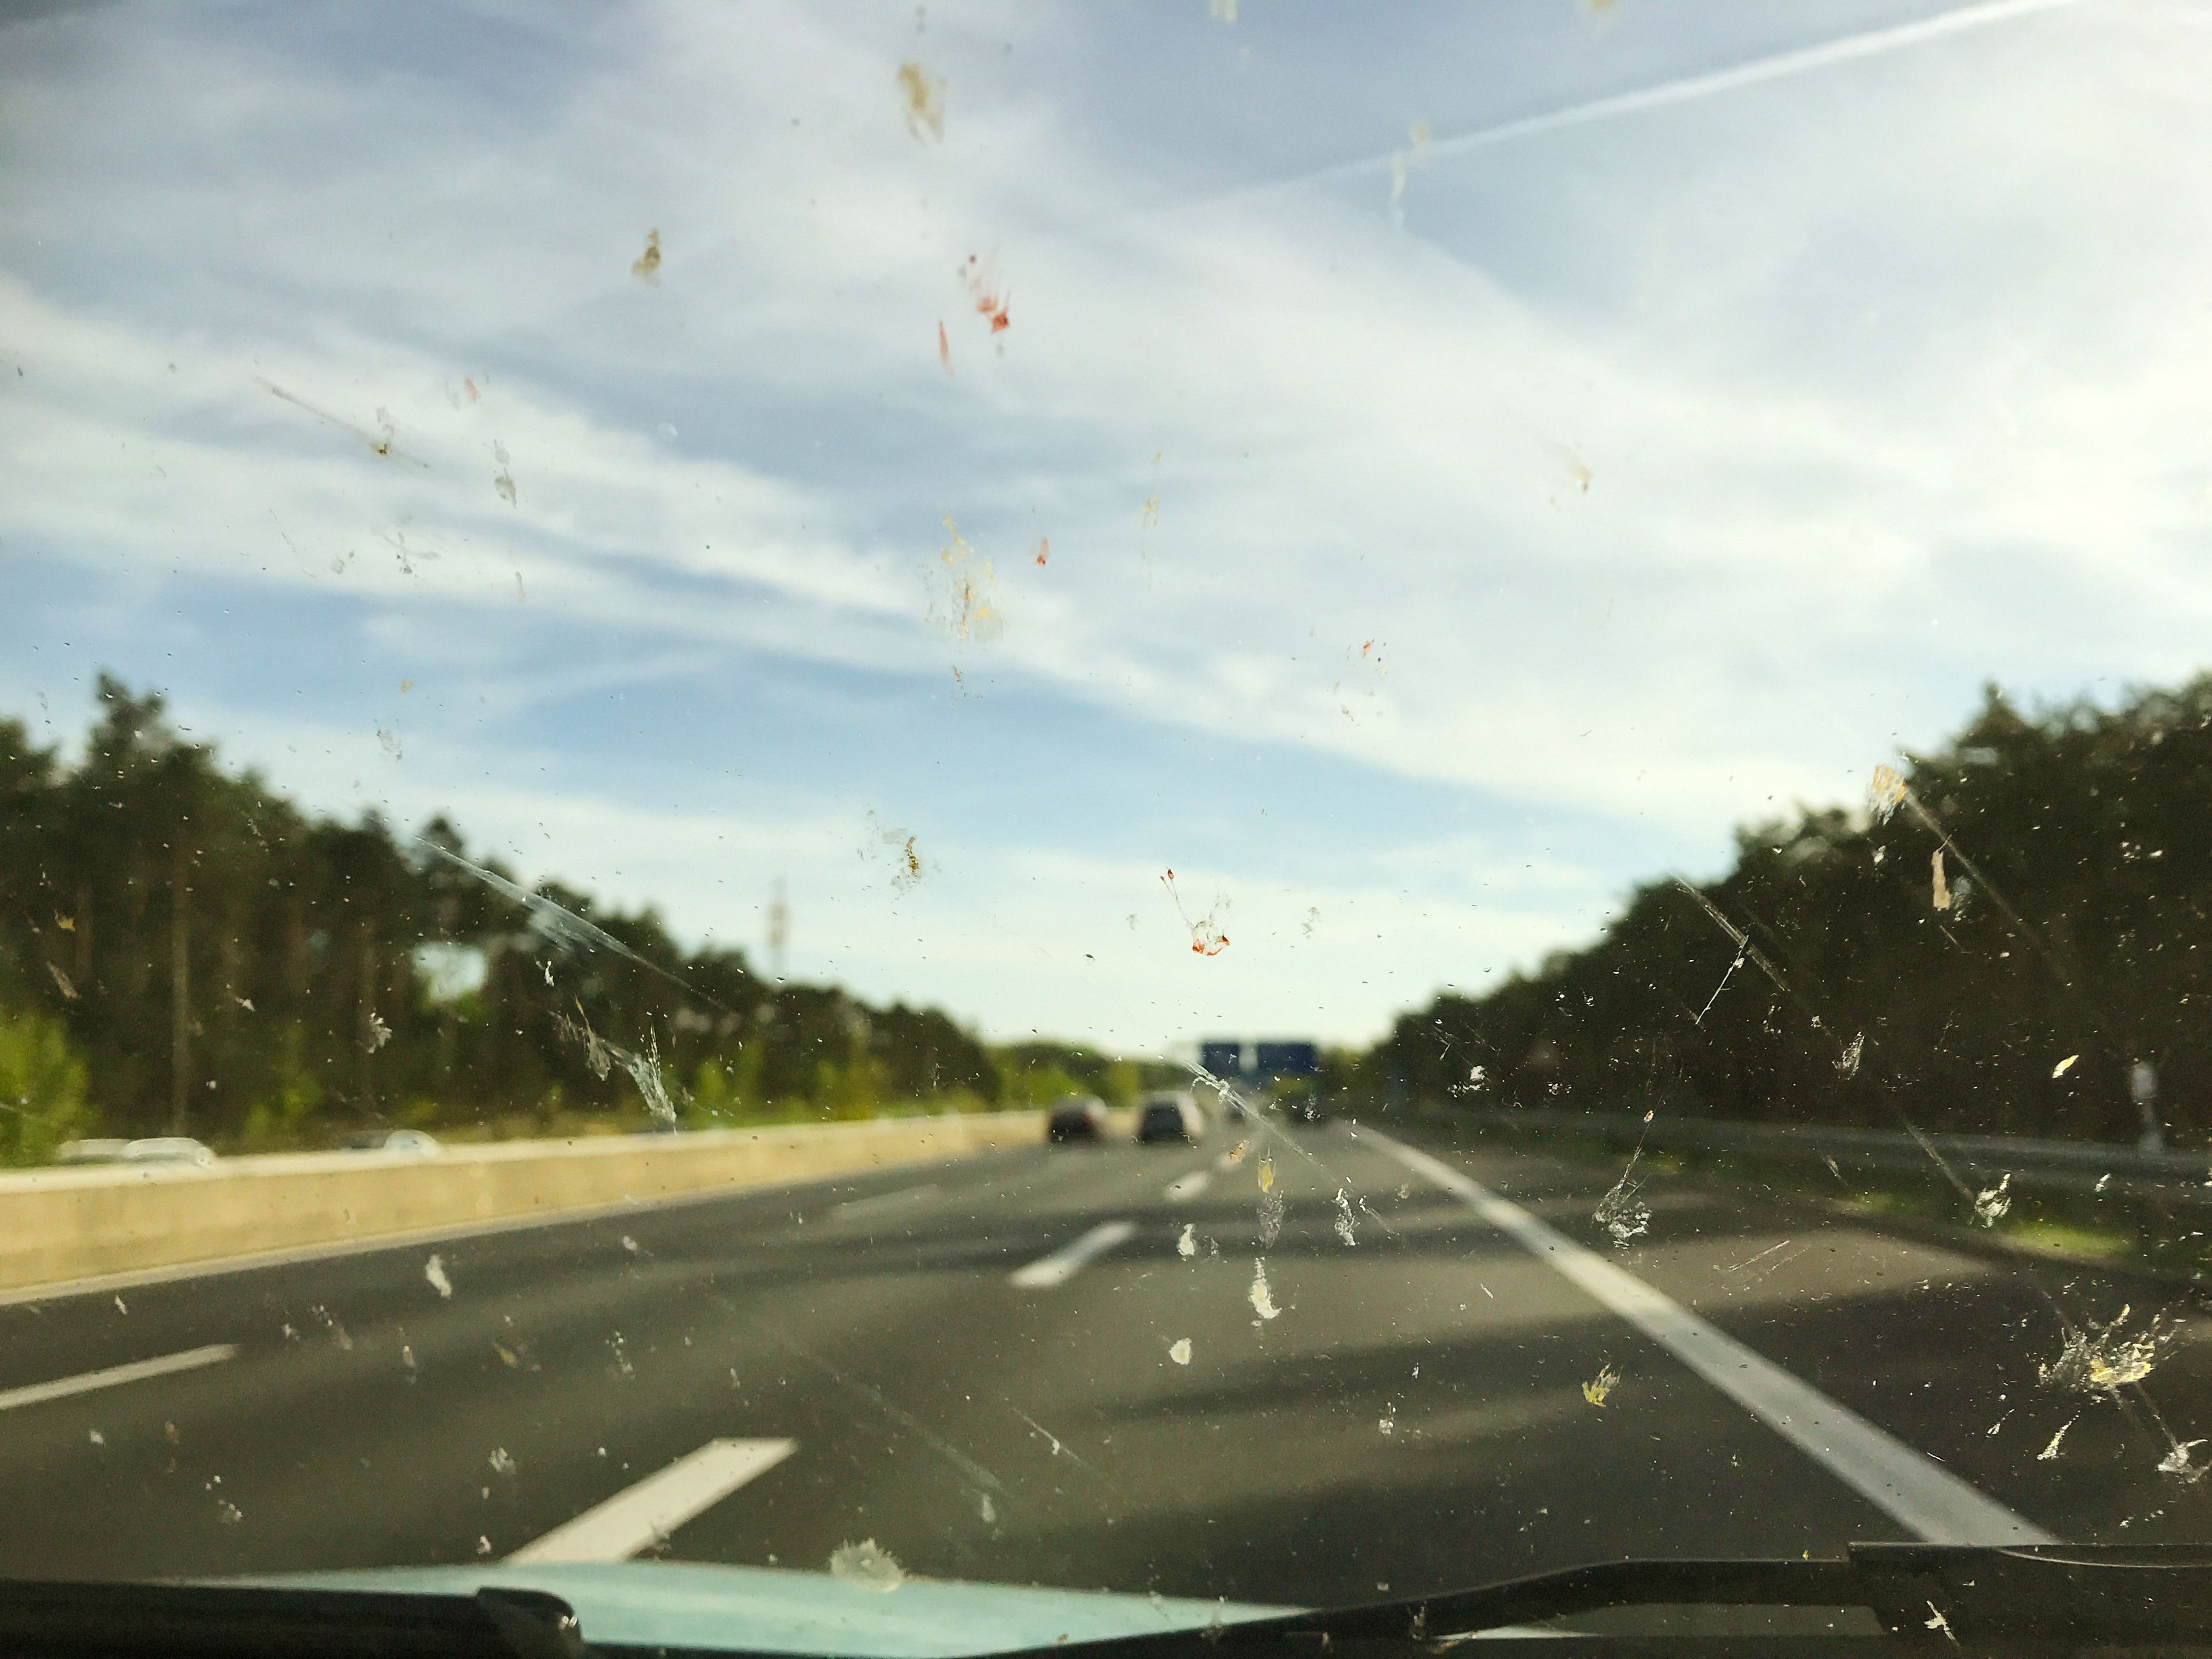 Calor, insectos y arena: Por qué pueden romper el parabrisas de tu coche